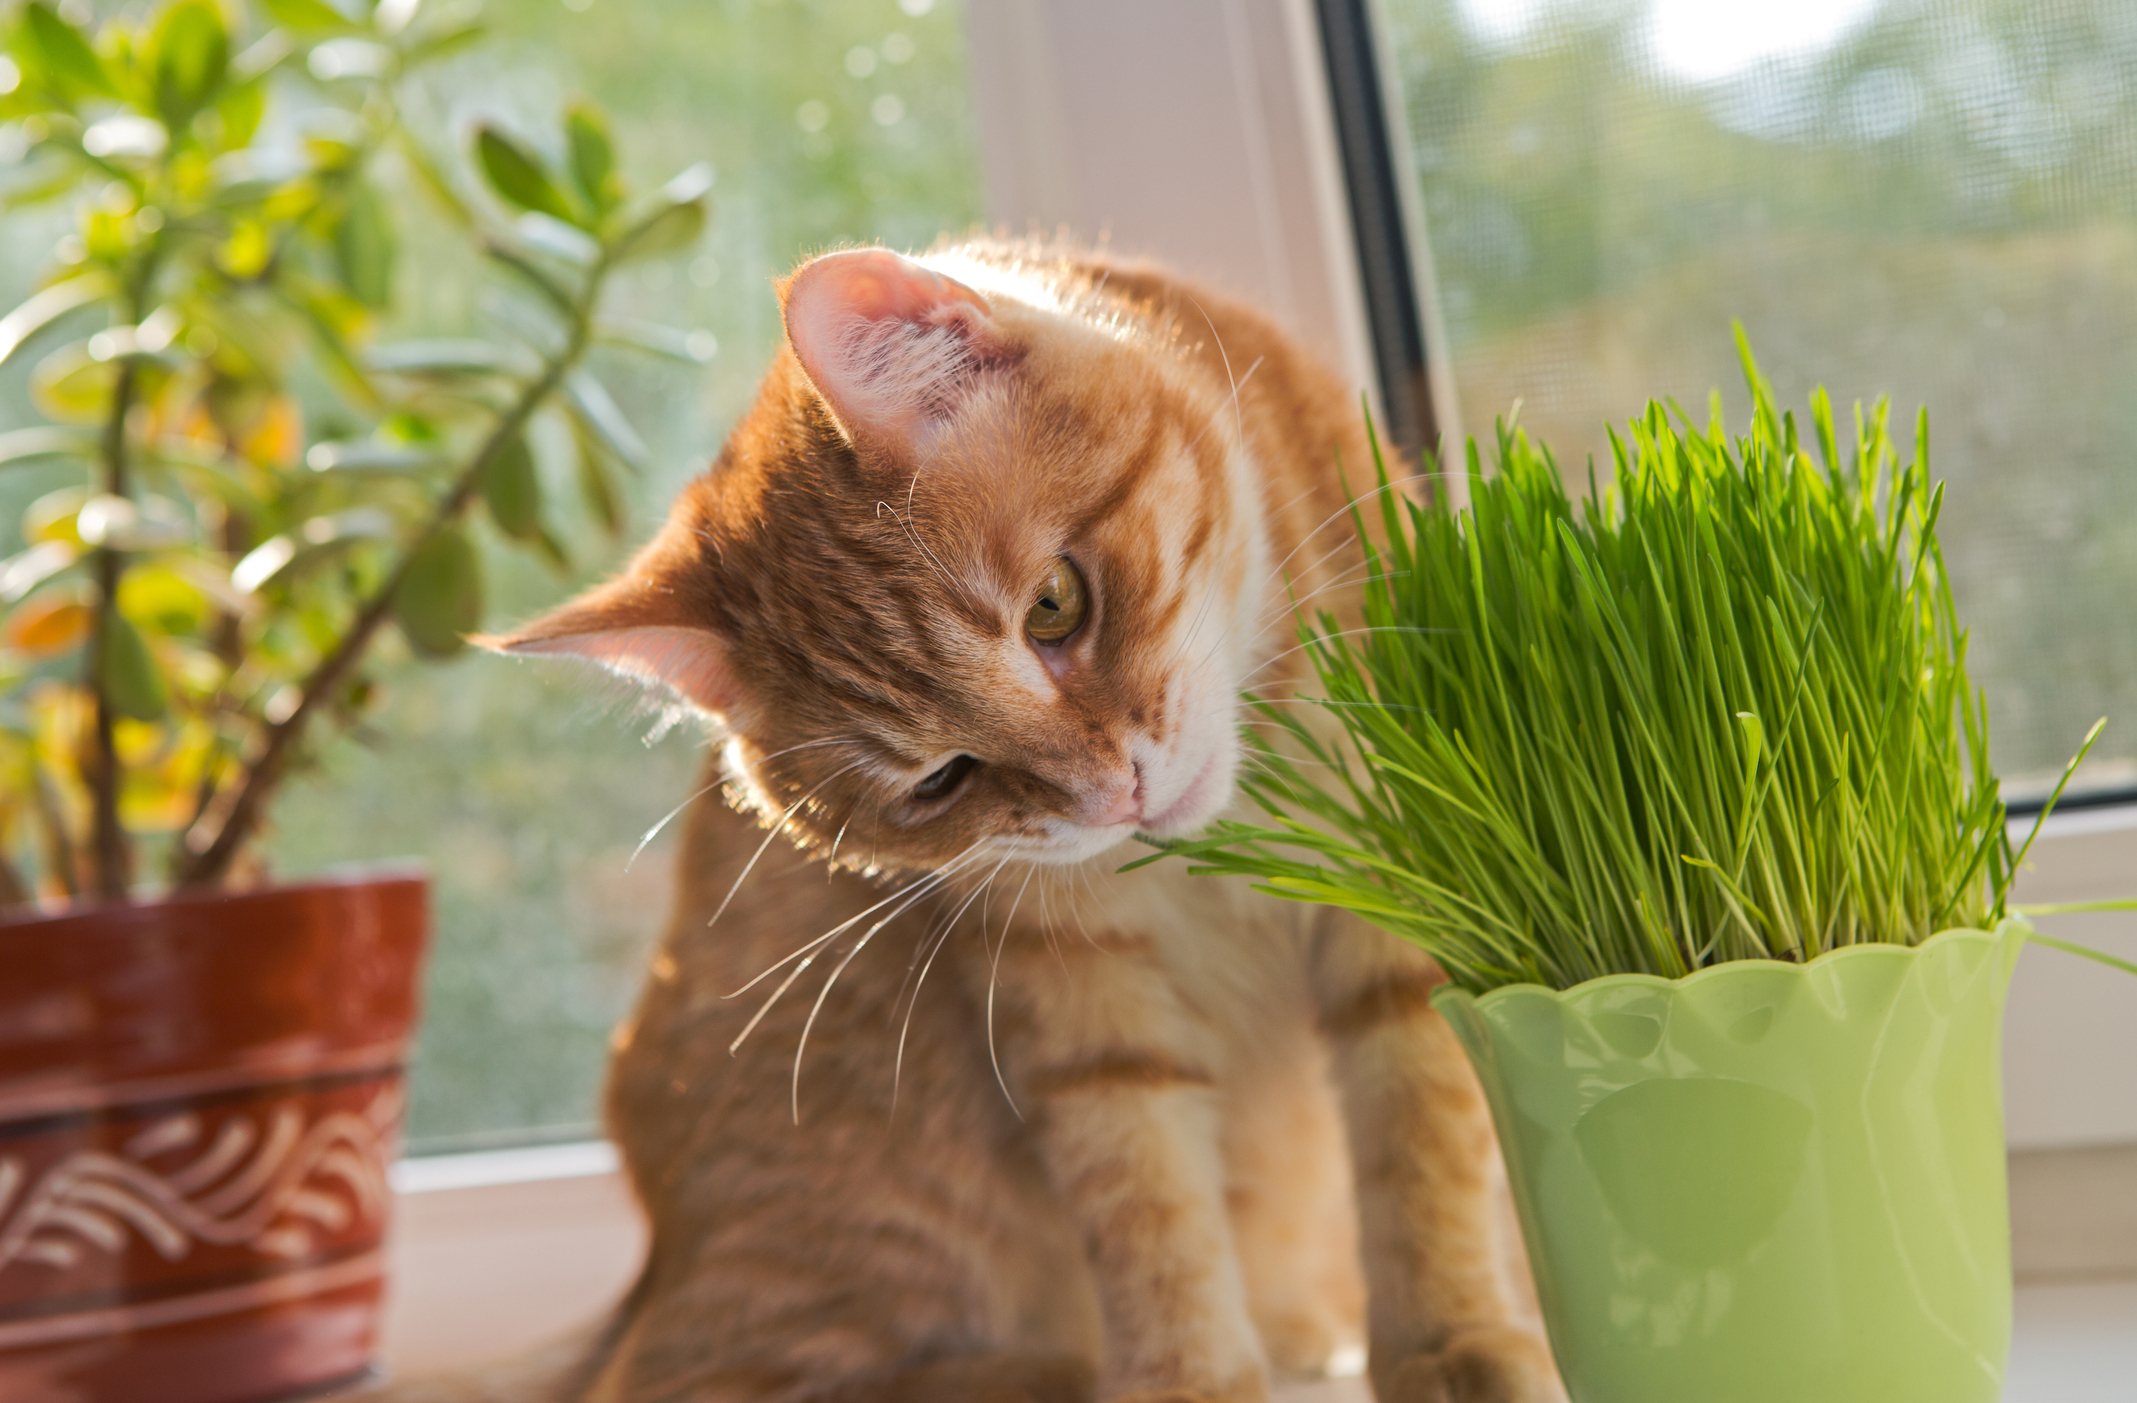 Cat and vase of fresh catnip